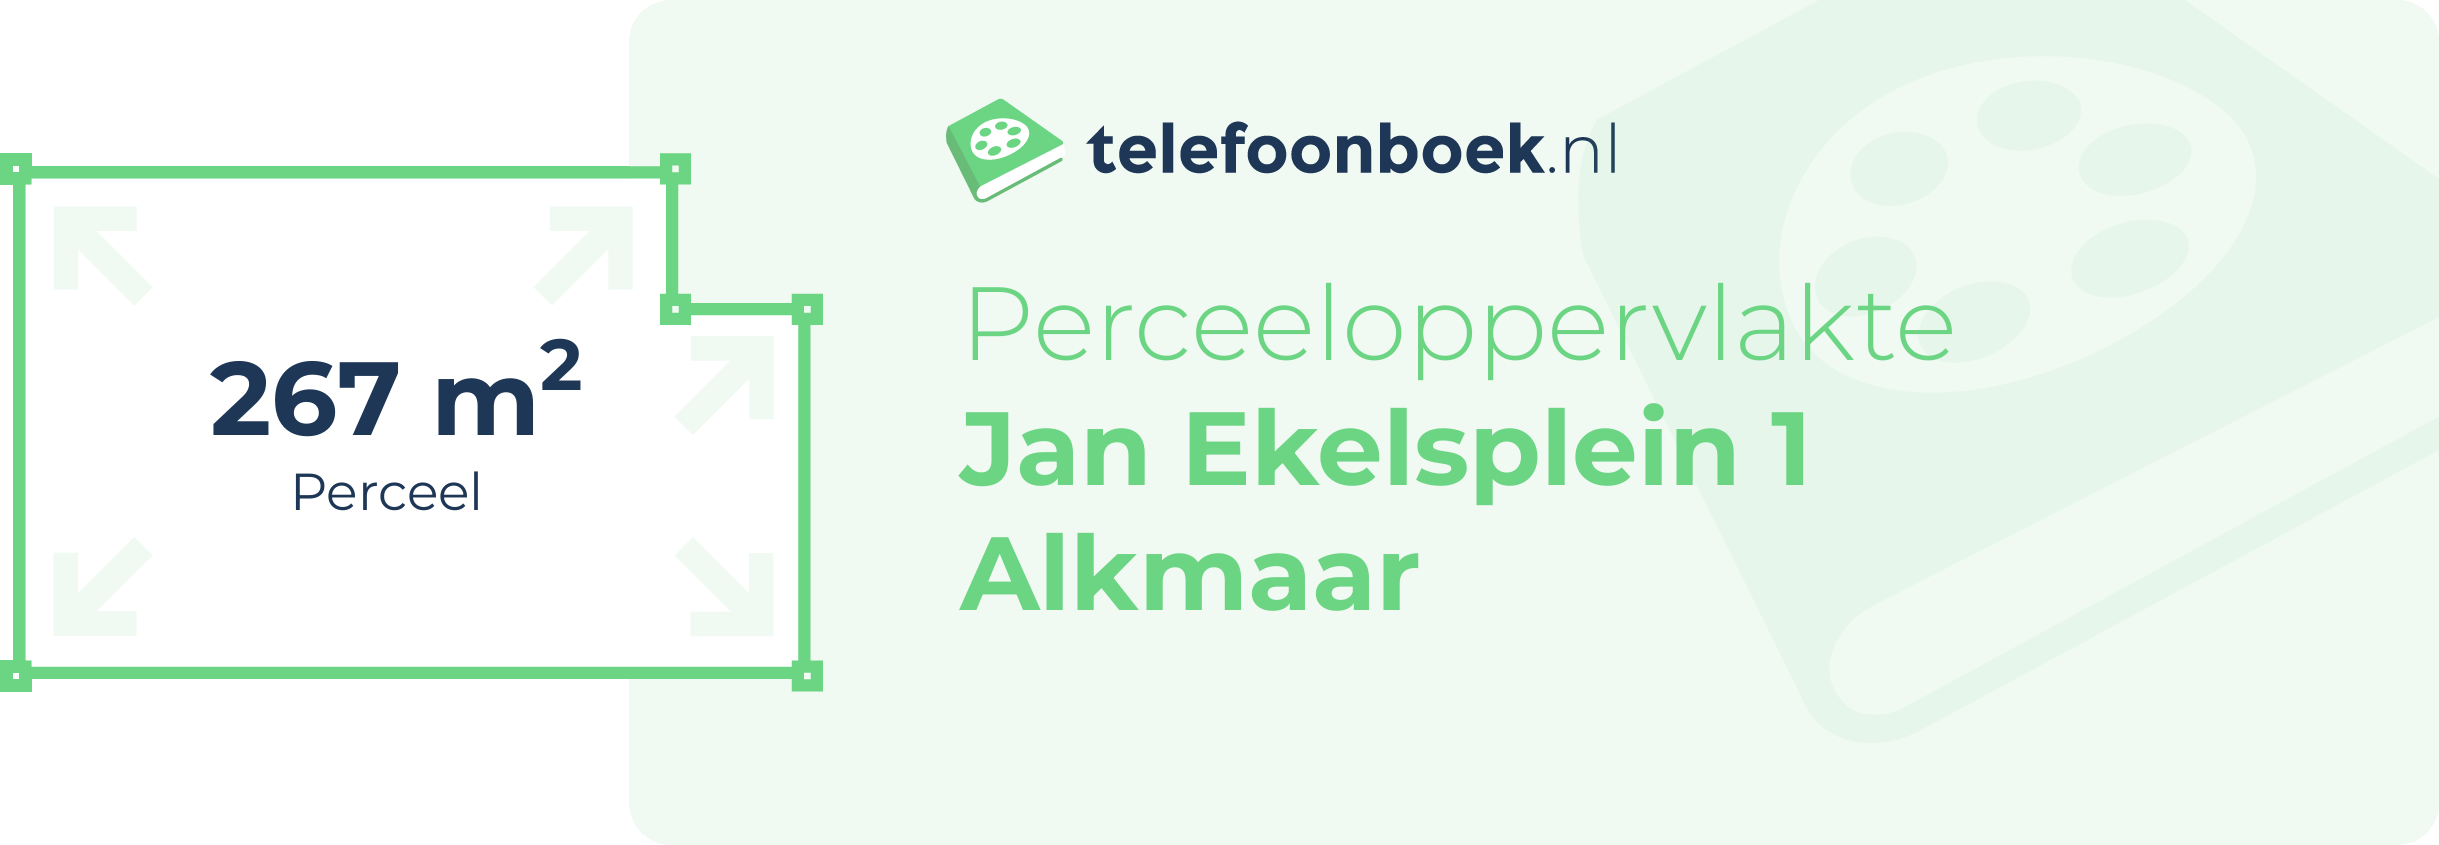 Perceeloppervlakte Jan Ekelsplein 1 Alkmaar